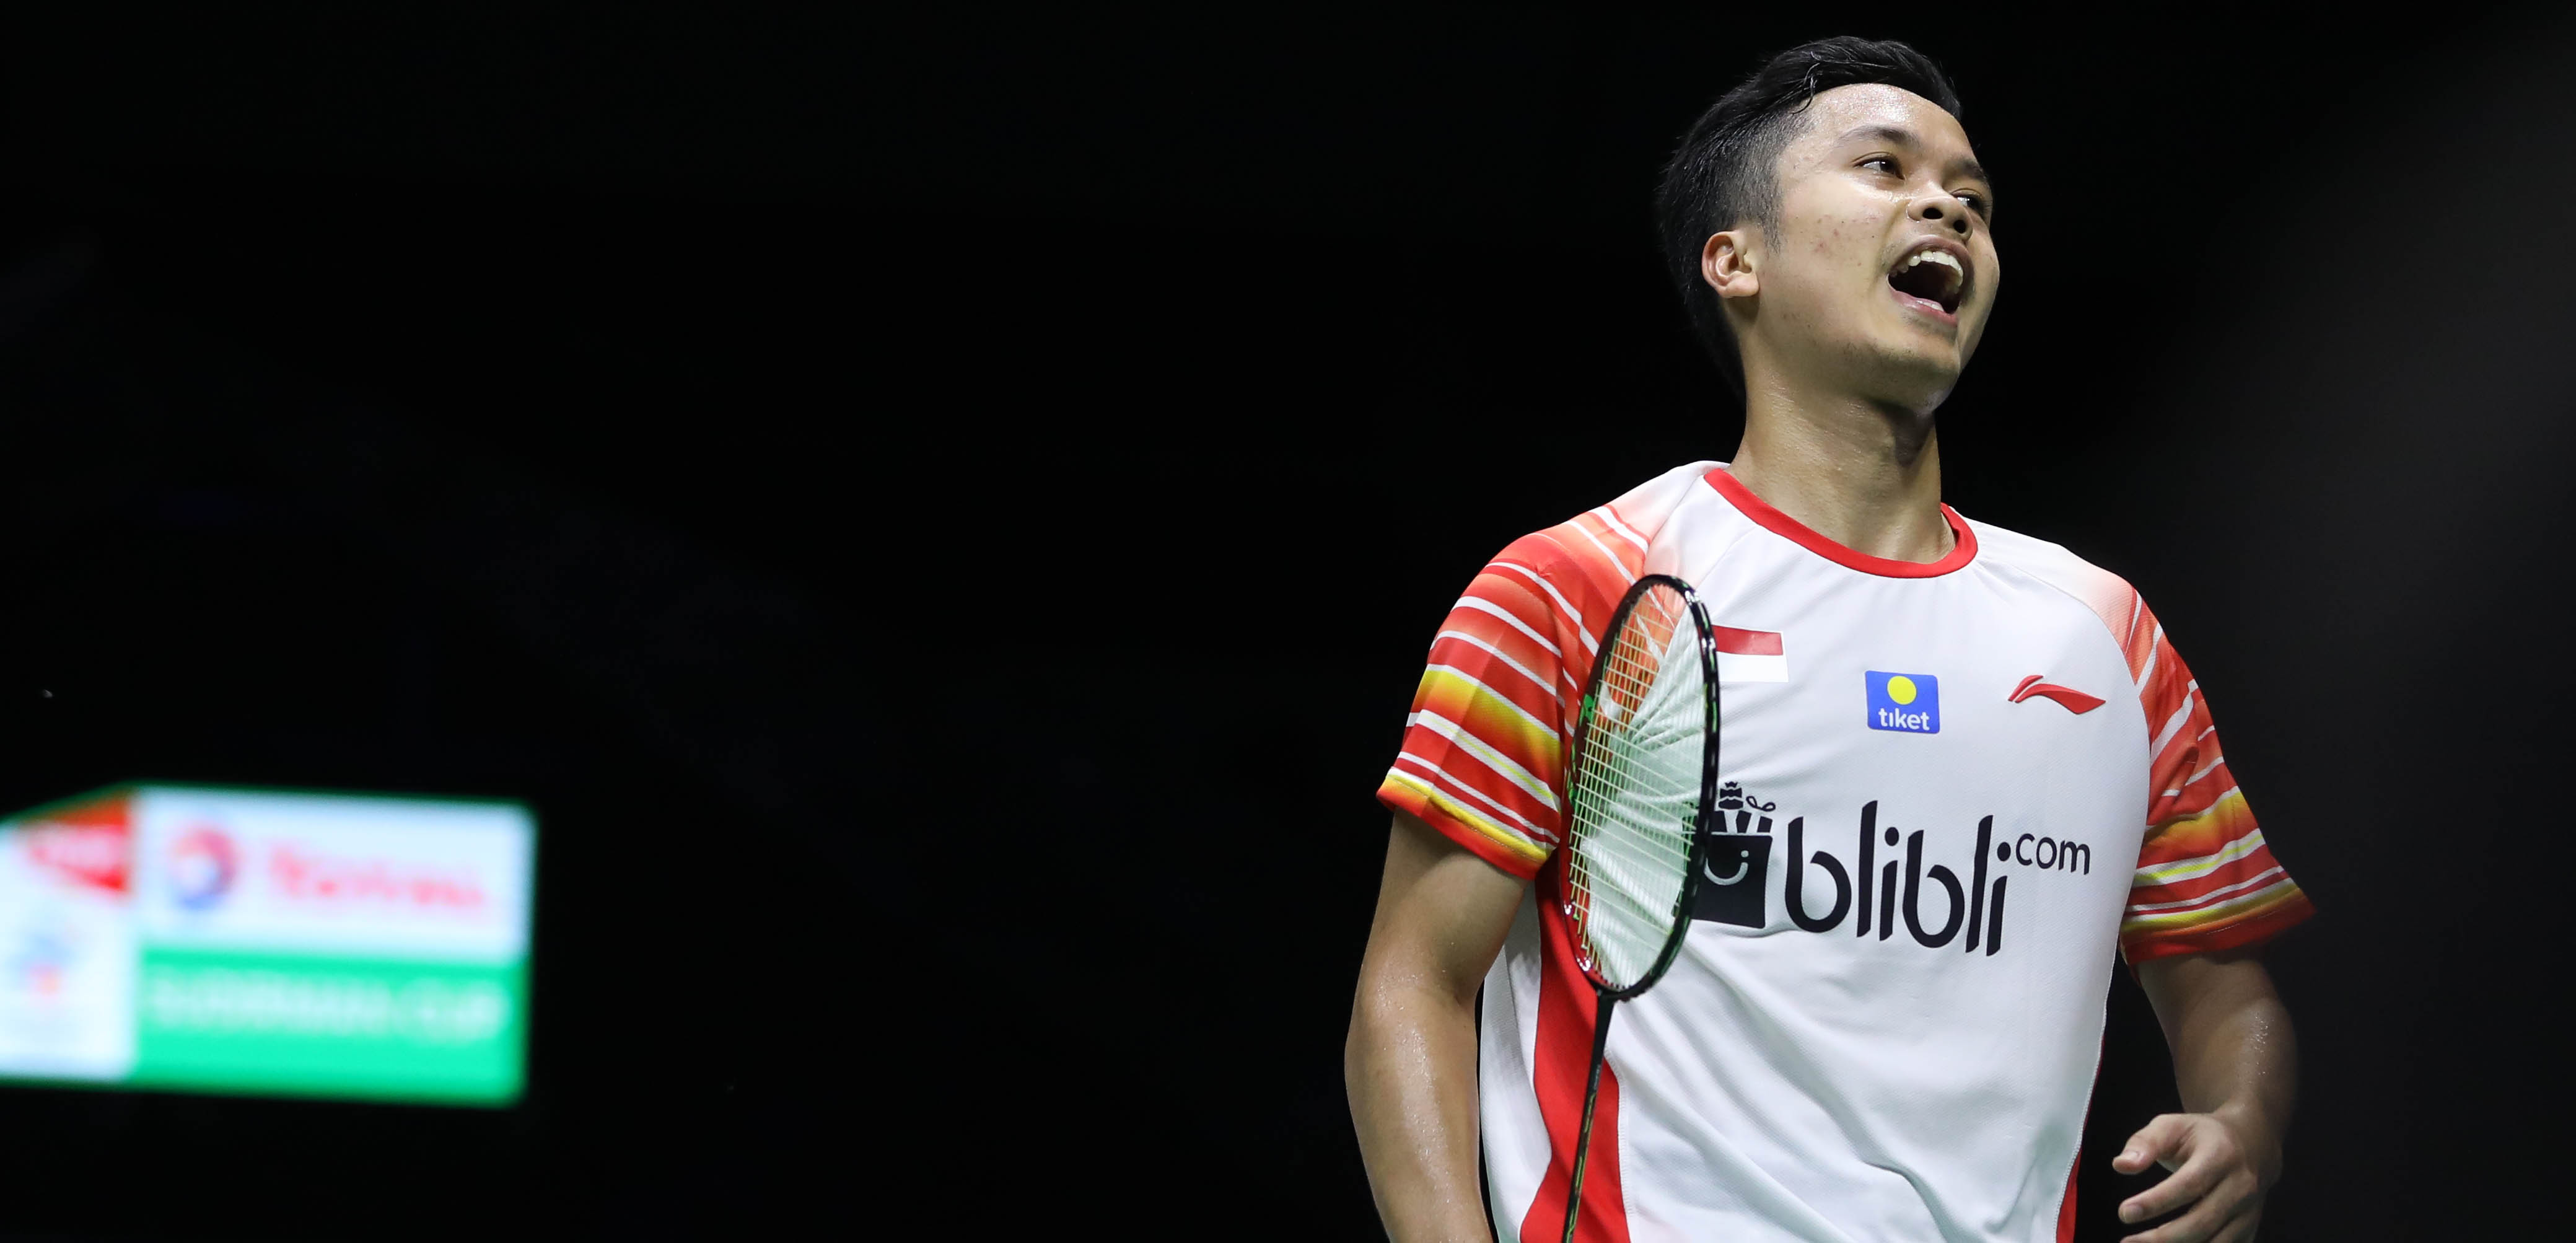 Tunggal putra Indonesia Anthony Ginting harus mengakui keunggulan Kento Momota di semifinal Piala Sudirman 2019. (Foto: PBSI)